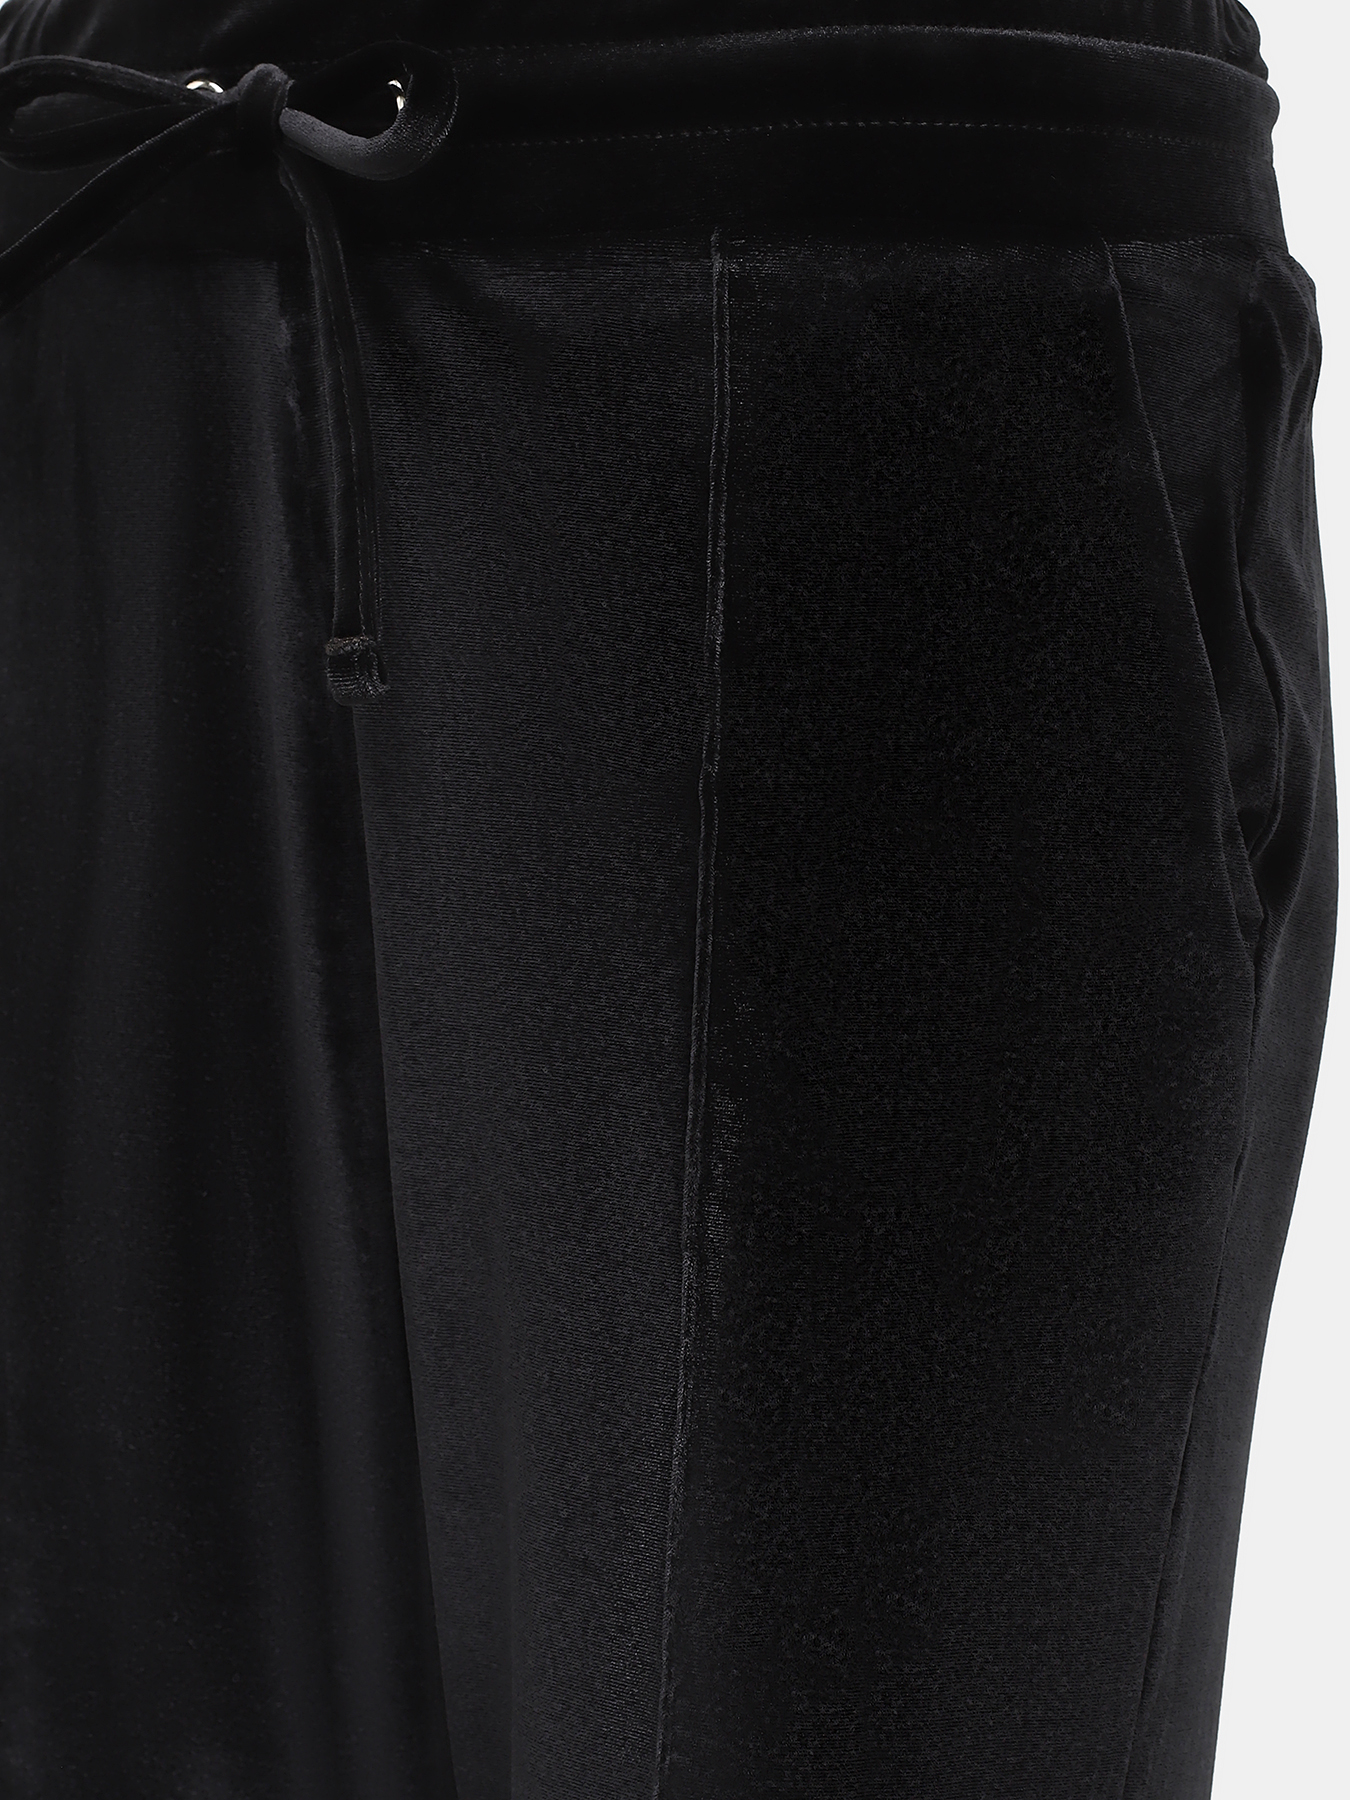 Спортивные брюки EA7 Emporio Armani 423041-043, цвет черный, размер 44-46 - фото 3